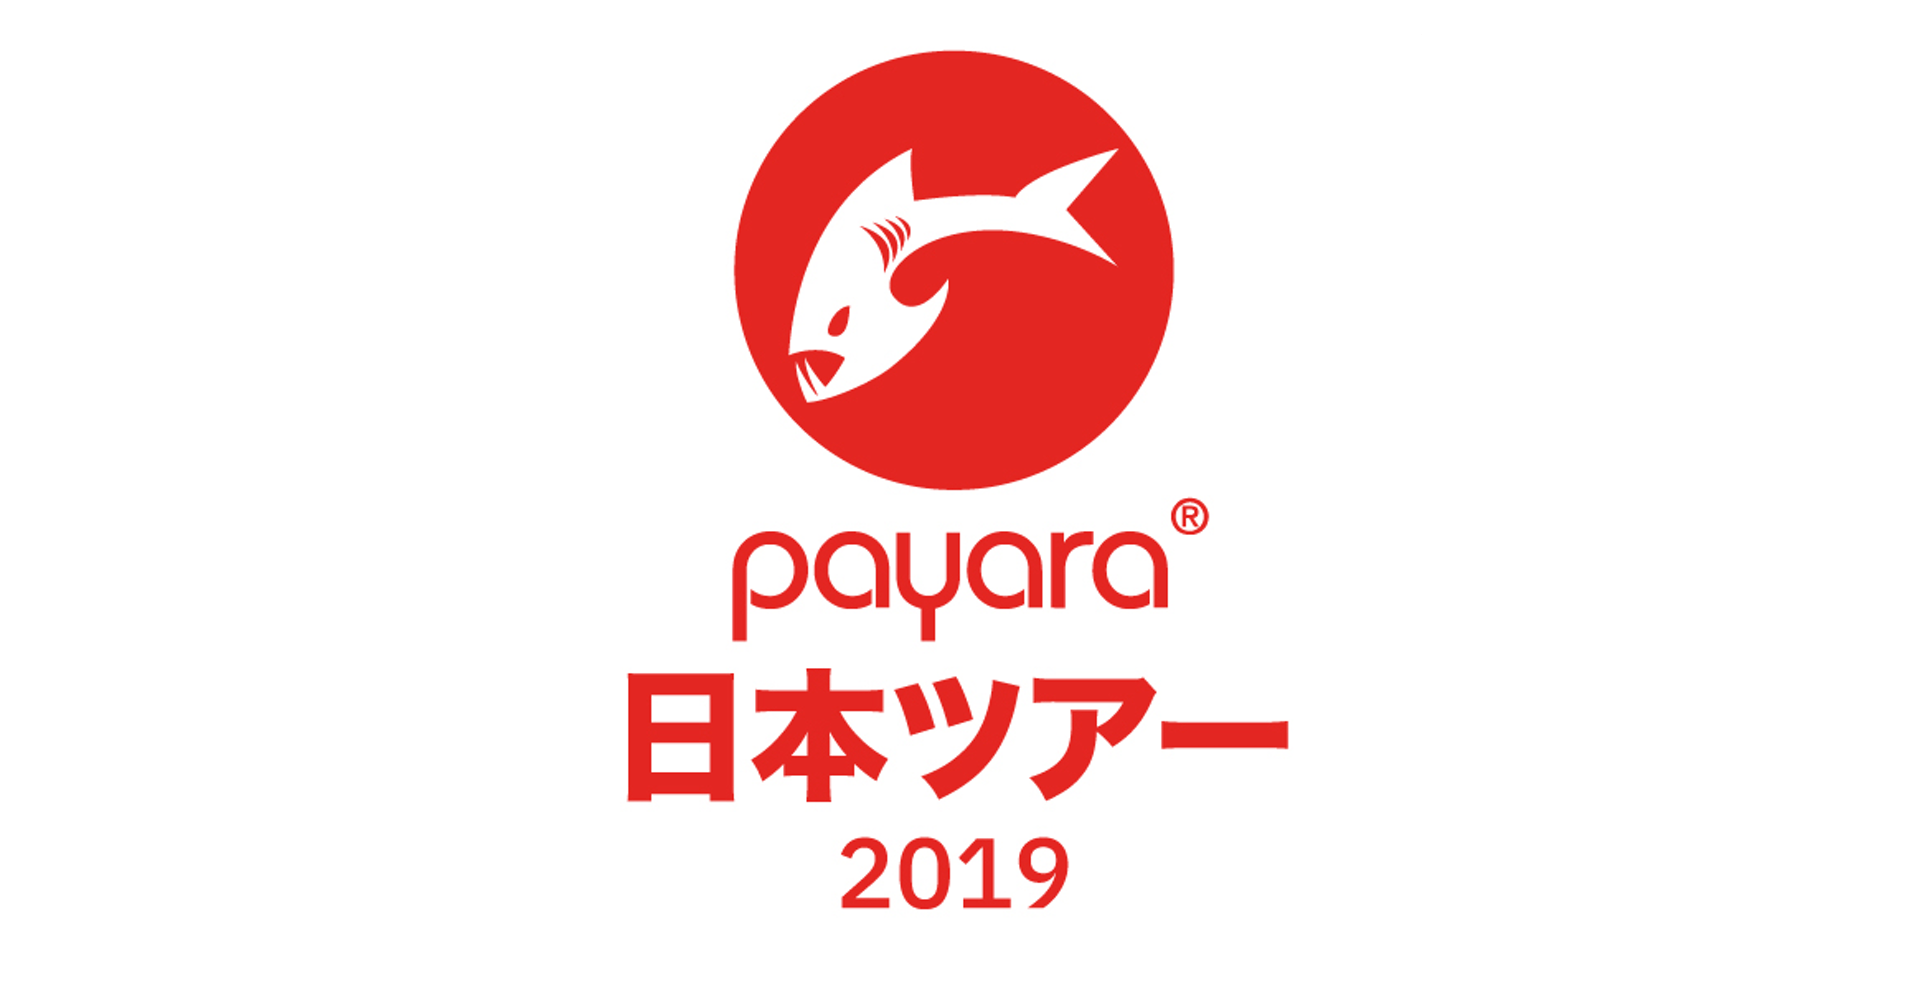 Payara日本ツアー2019を開催します！ #payaratour2019